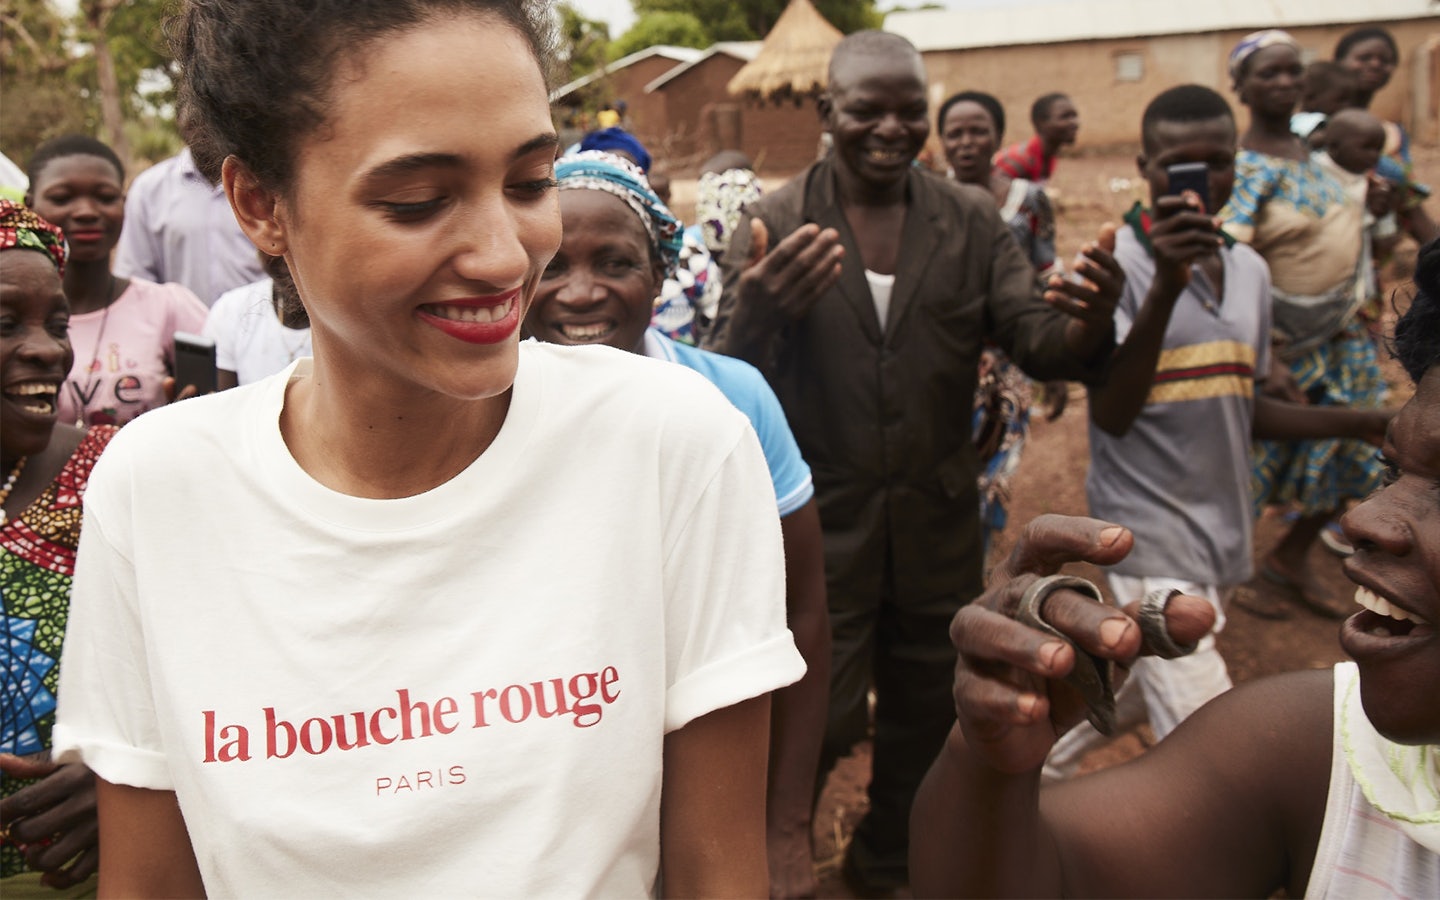 La bouche rouge collaboration with Eau Vive Internationale association in Togo